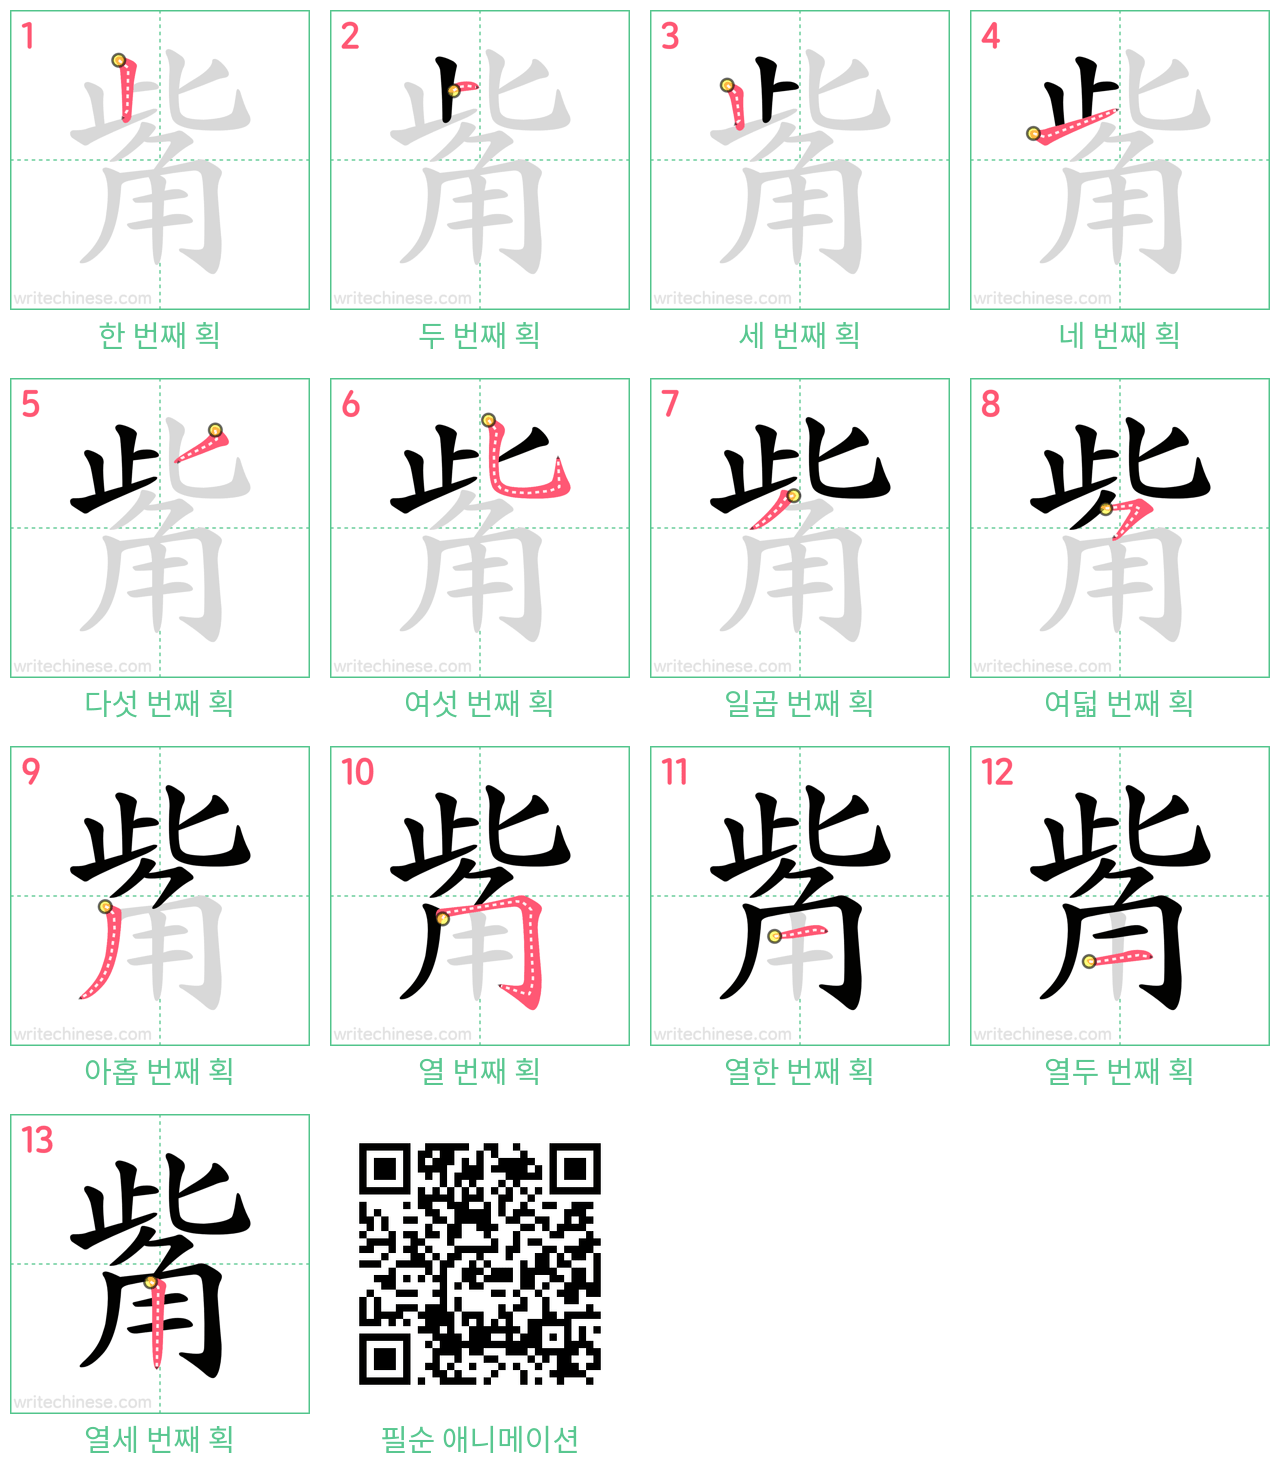 觜 step-by-step stroke order diagrams